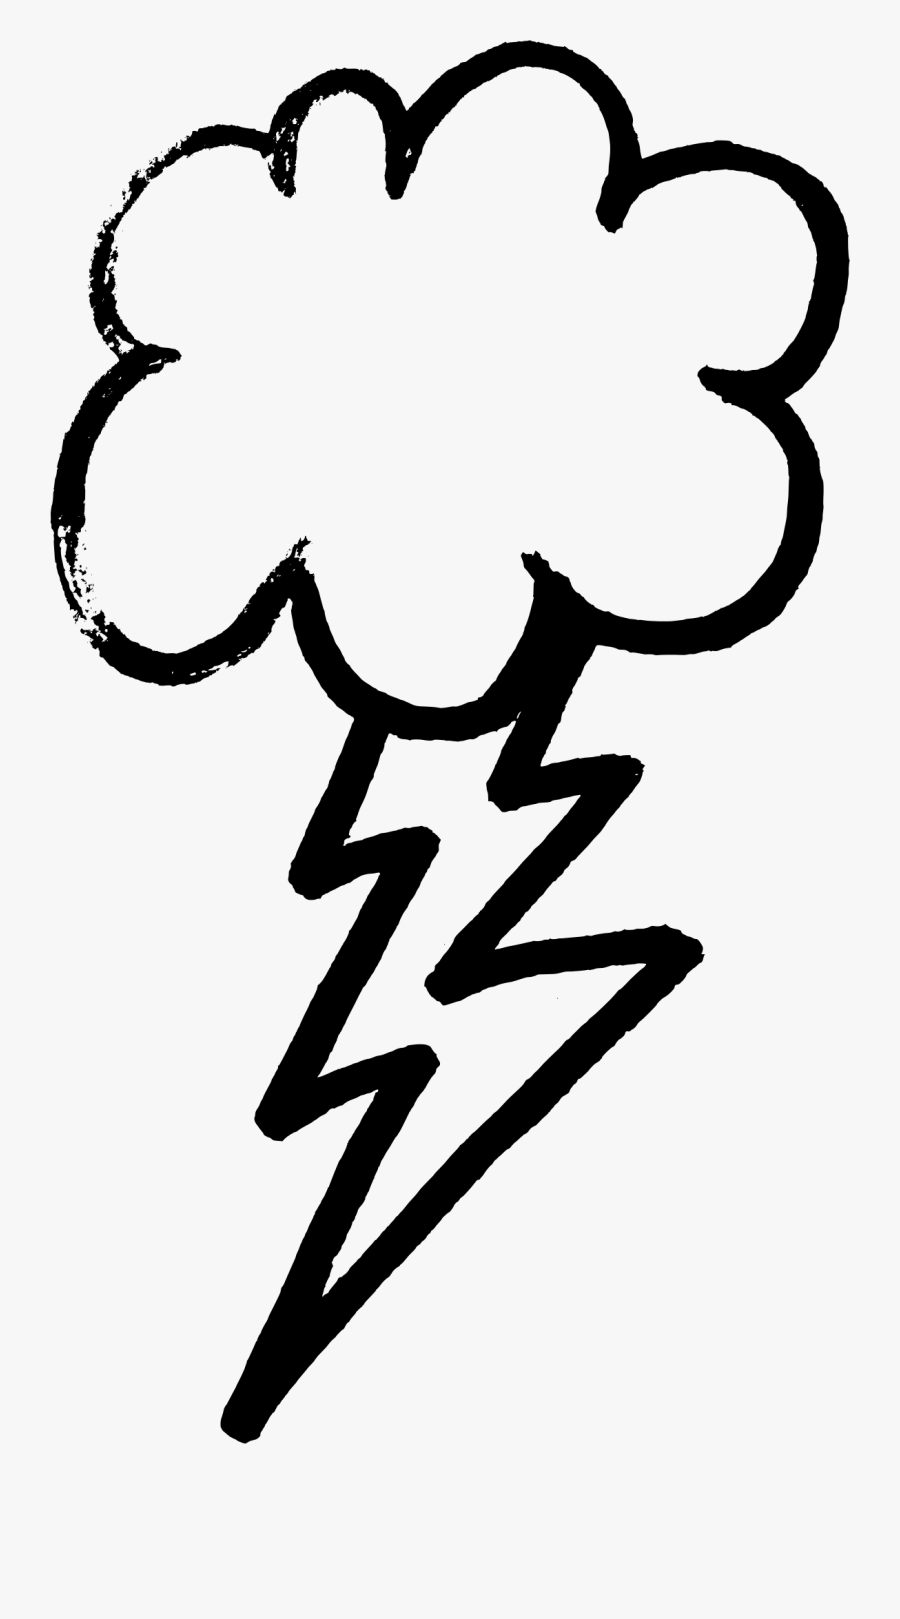 Storm Clipart Ligtning - Thunder And Lightning Outline, Transparent Clipart